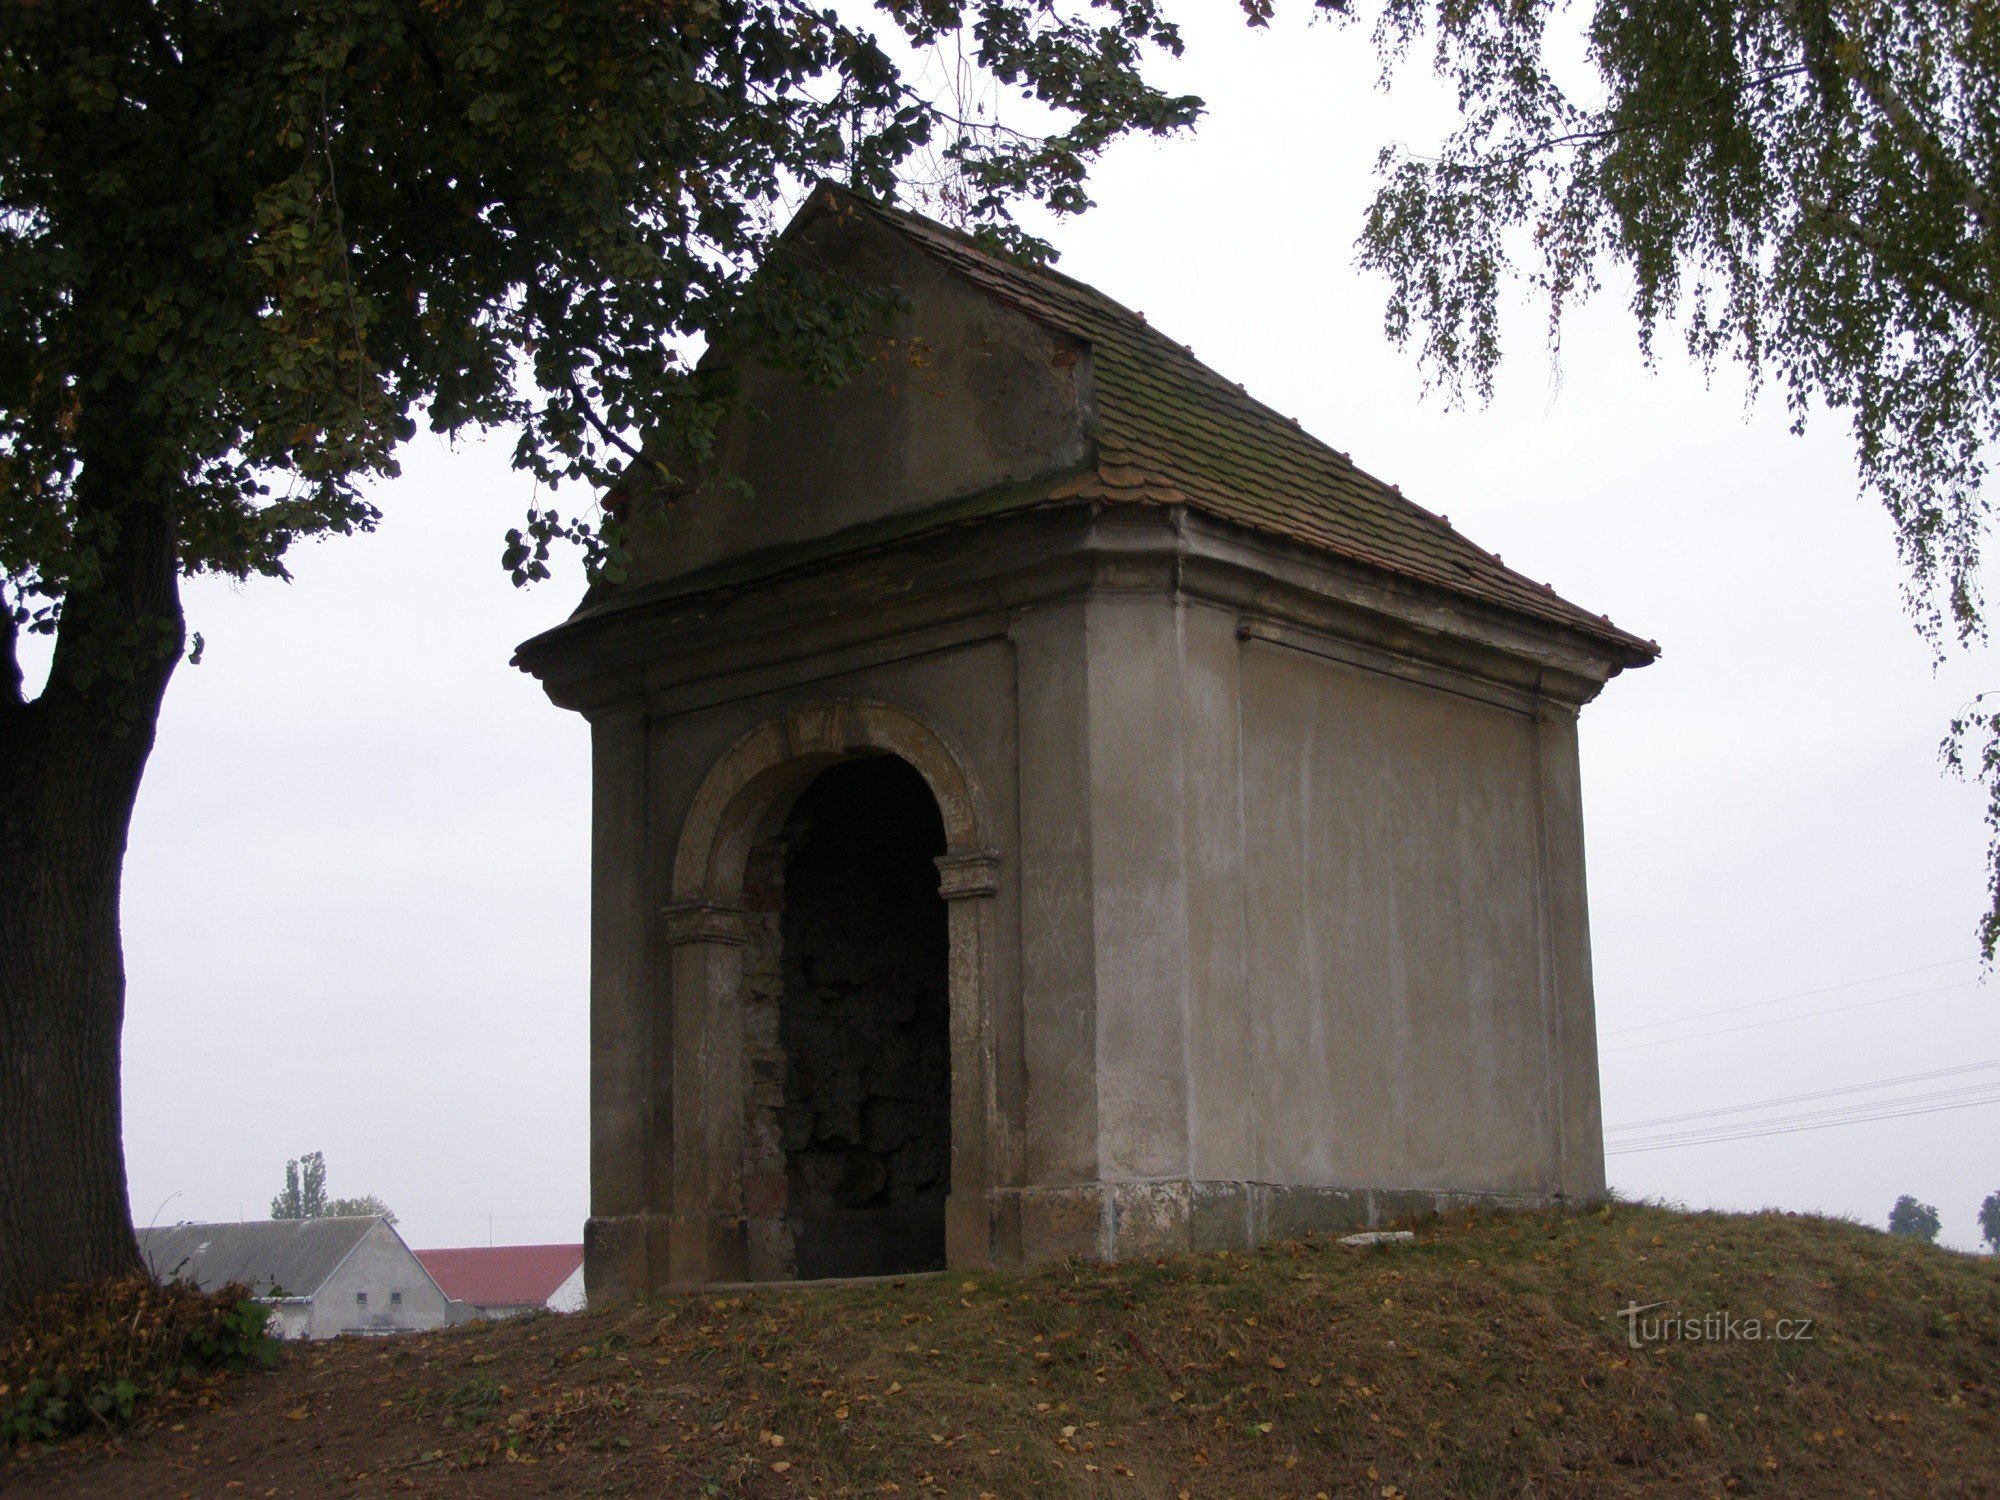 Vestec lähellä Chrudimia - kappelia